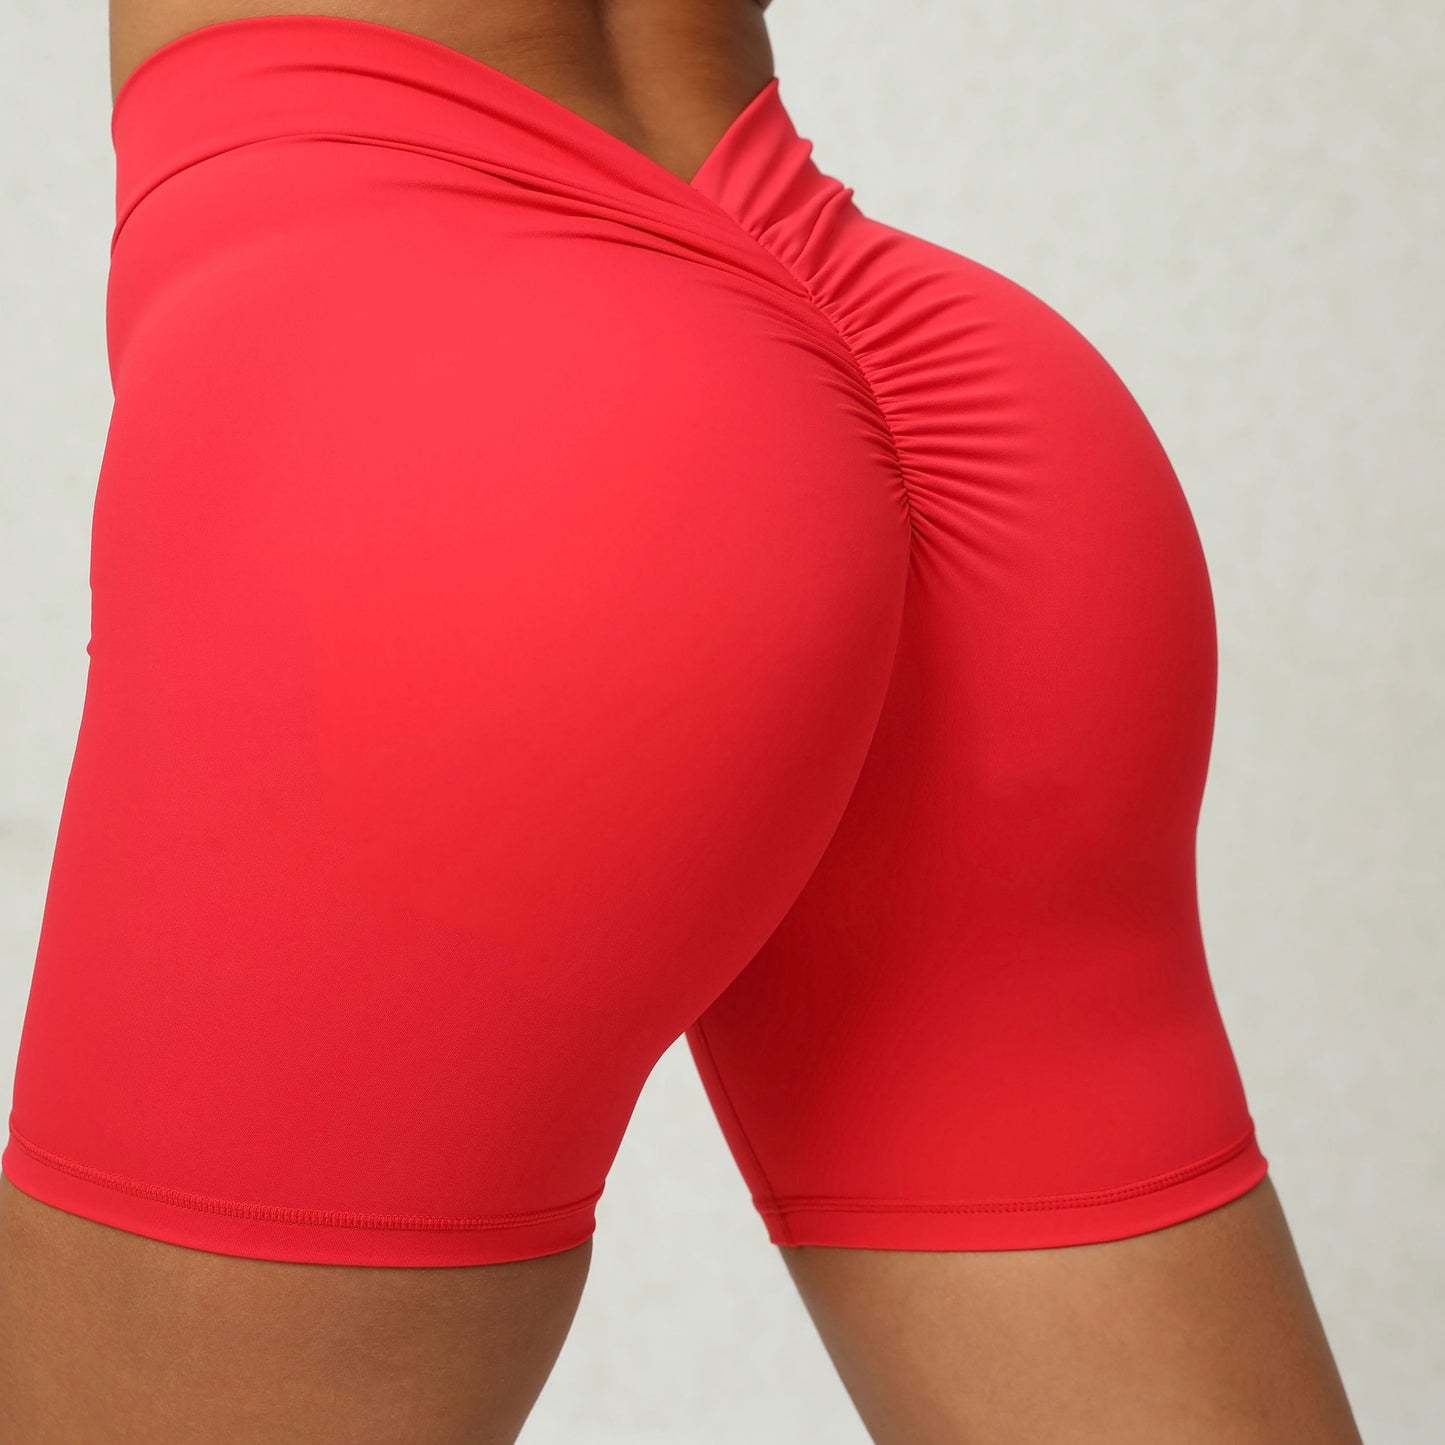 Women's Peach Hip Workout Shorts